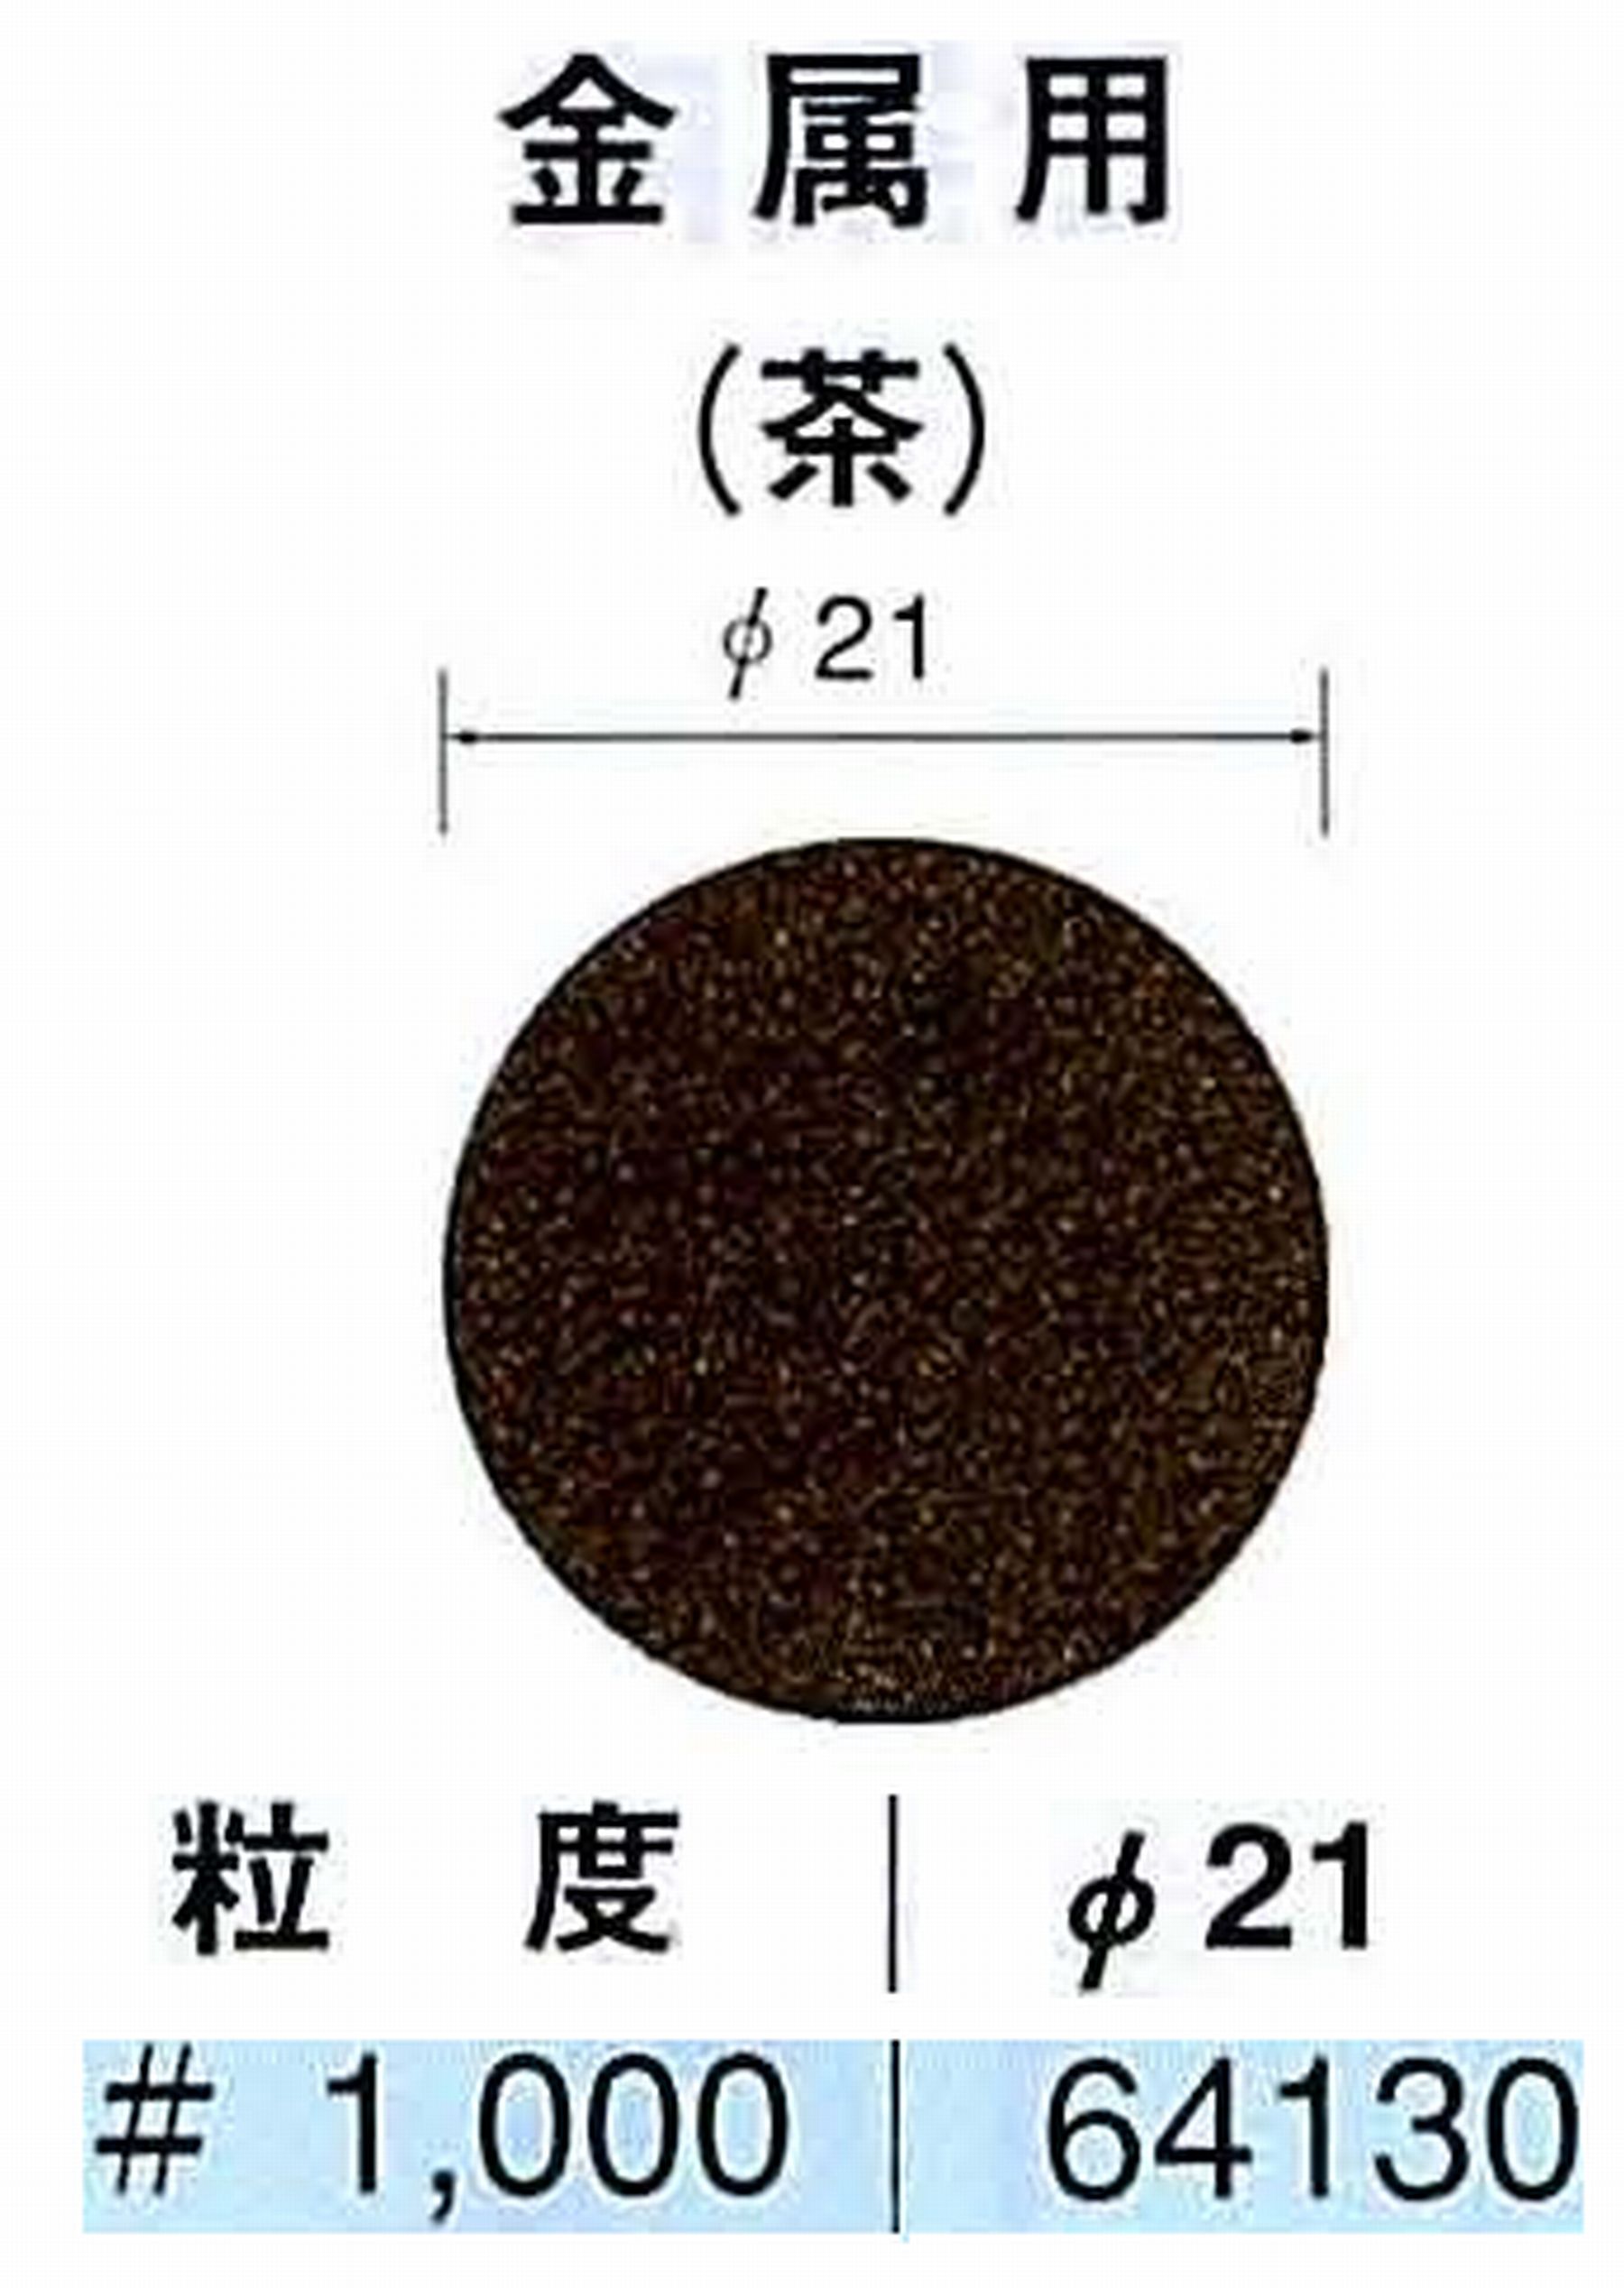 ナカニシ/NAKANISHI アングルグラインダ(電動・エアー) アングルアタッチメント専用工具 サンドペーパーディスク(布基材タイプ)裏面のり処理 64130